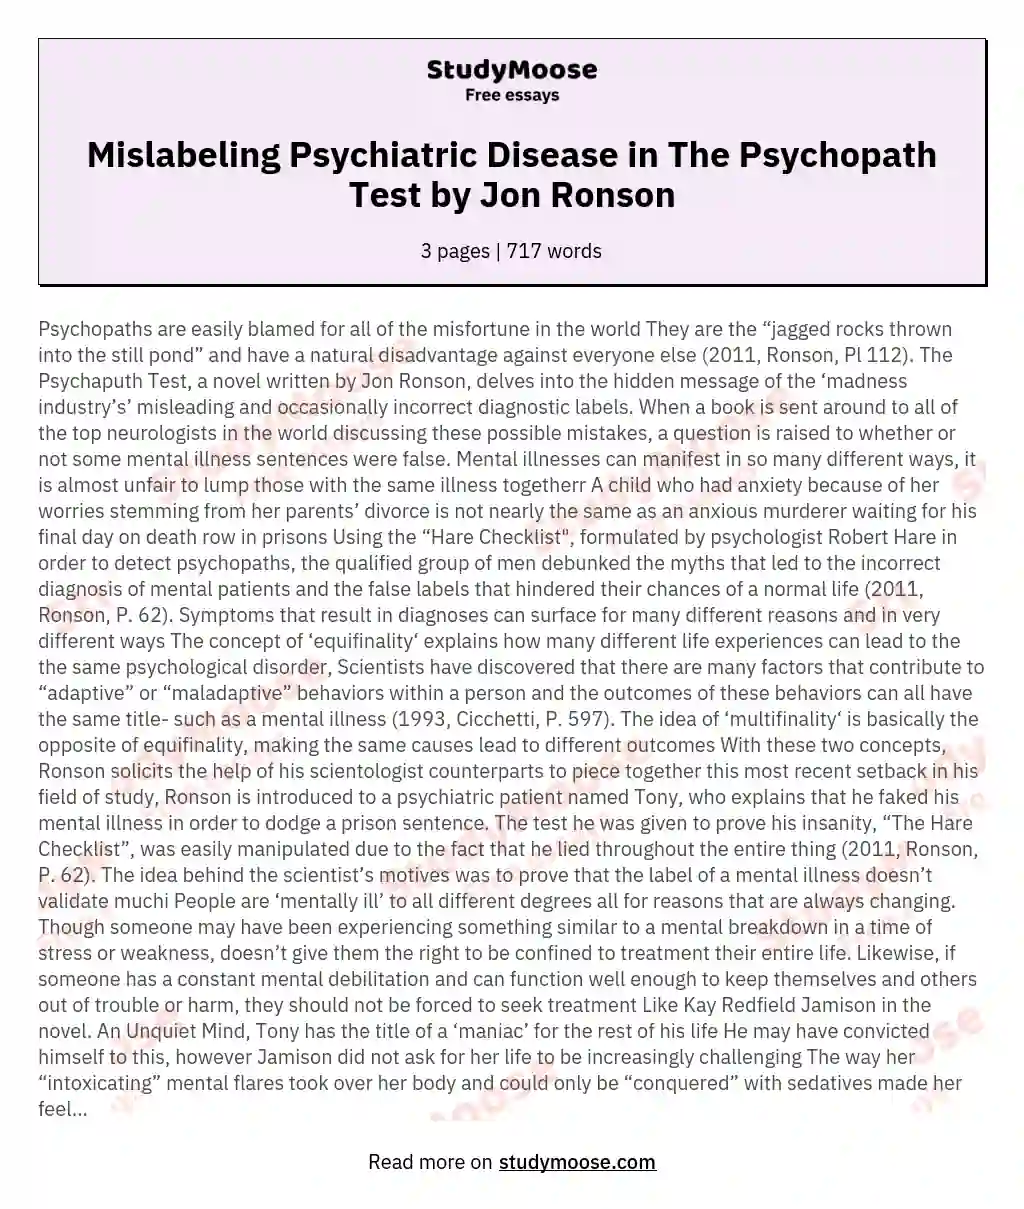 Mislabeling Psychiatric Disease in The Psychopath Test by Jon Ronson essay